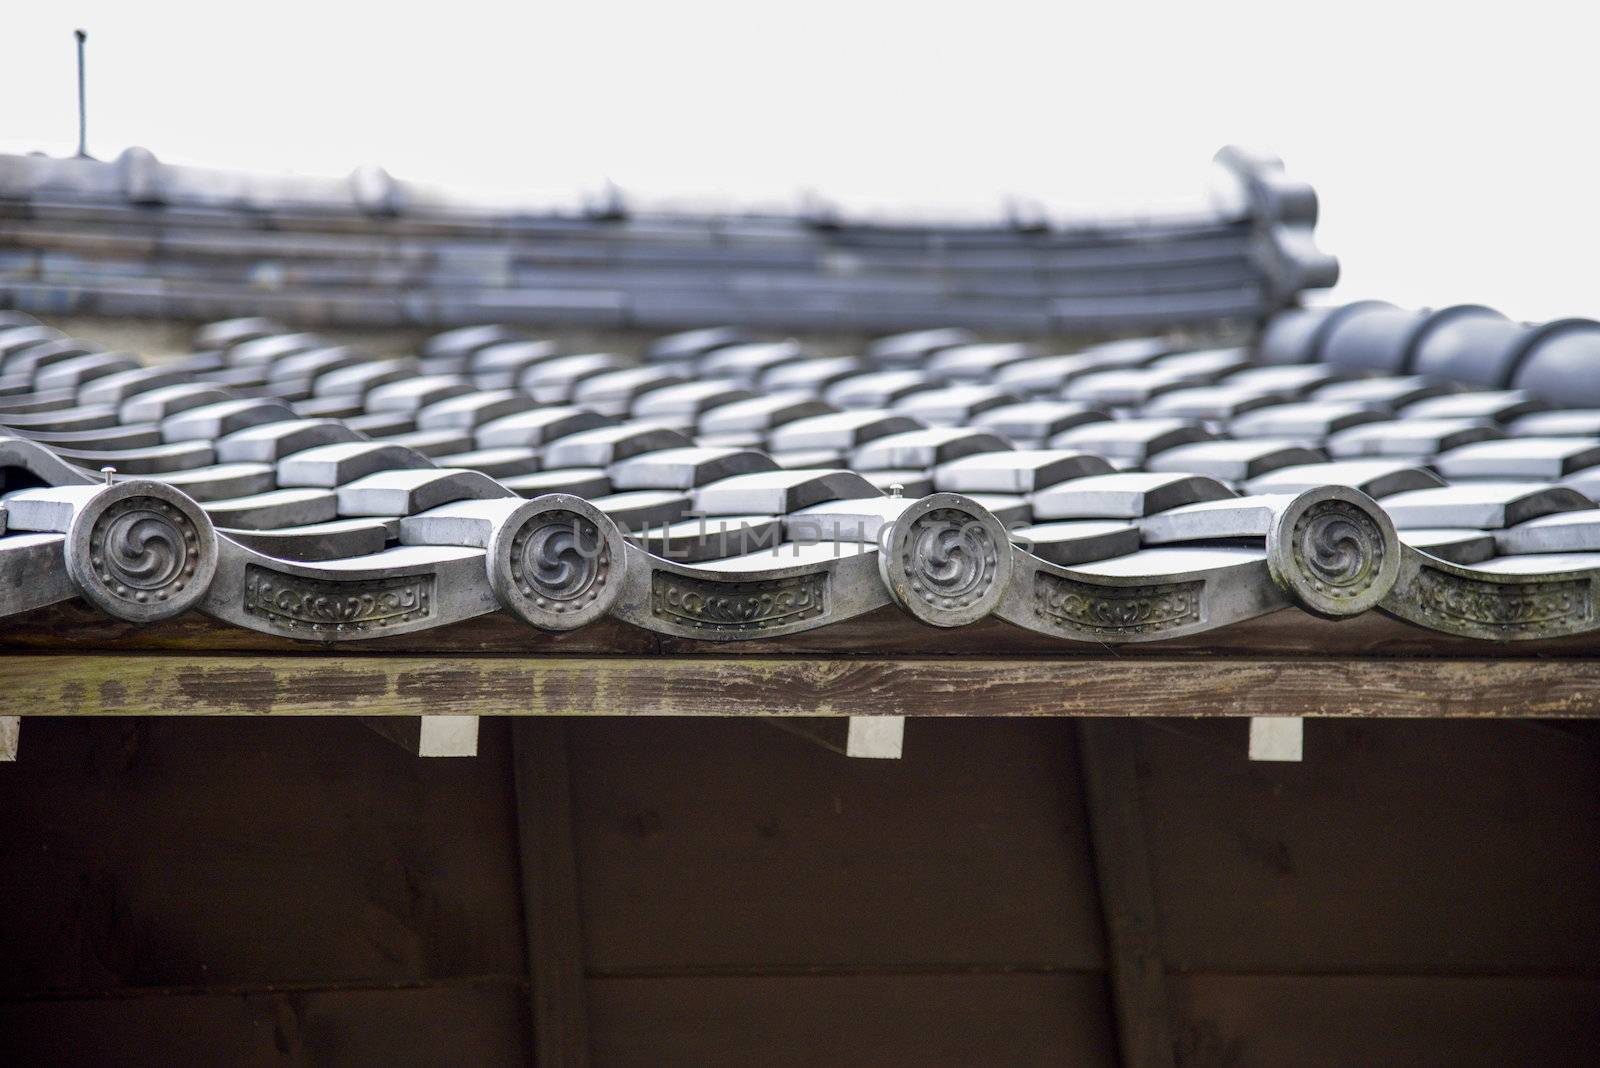 Roof in Japanese style1 by gjeerawut